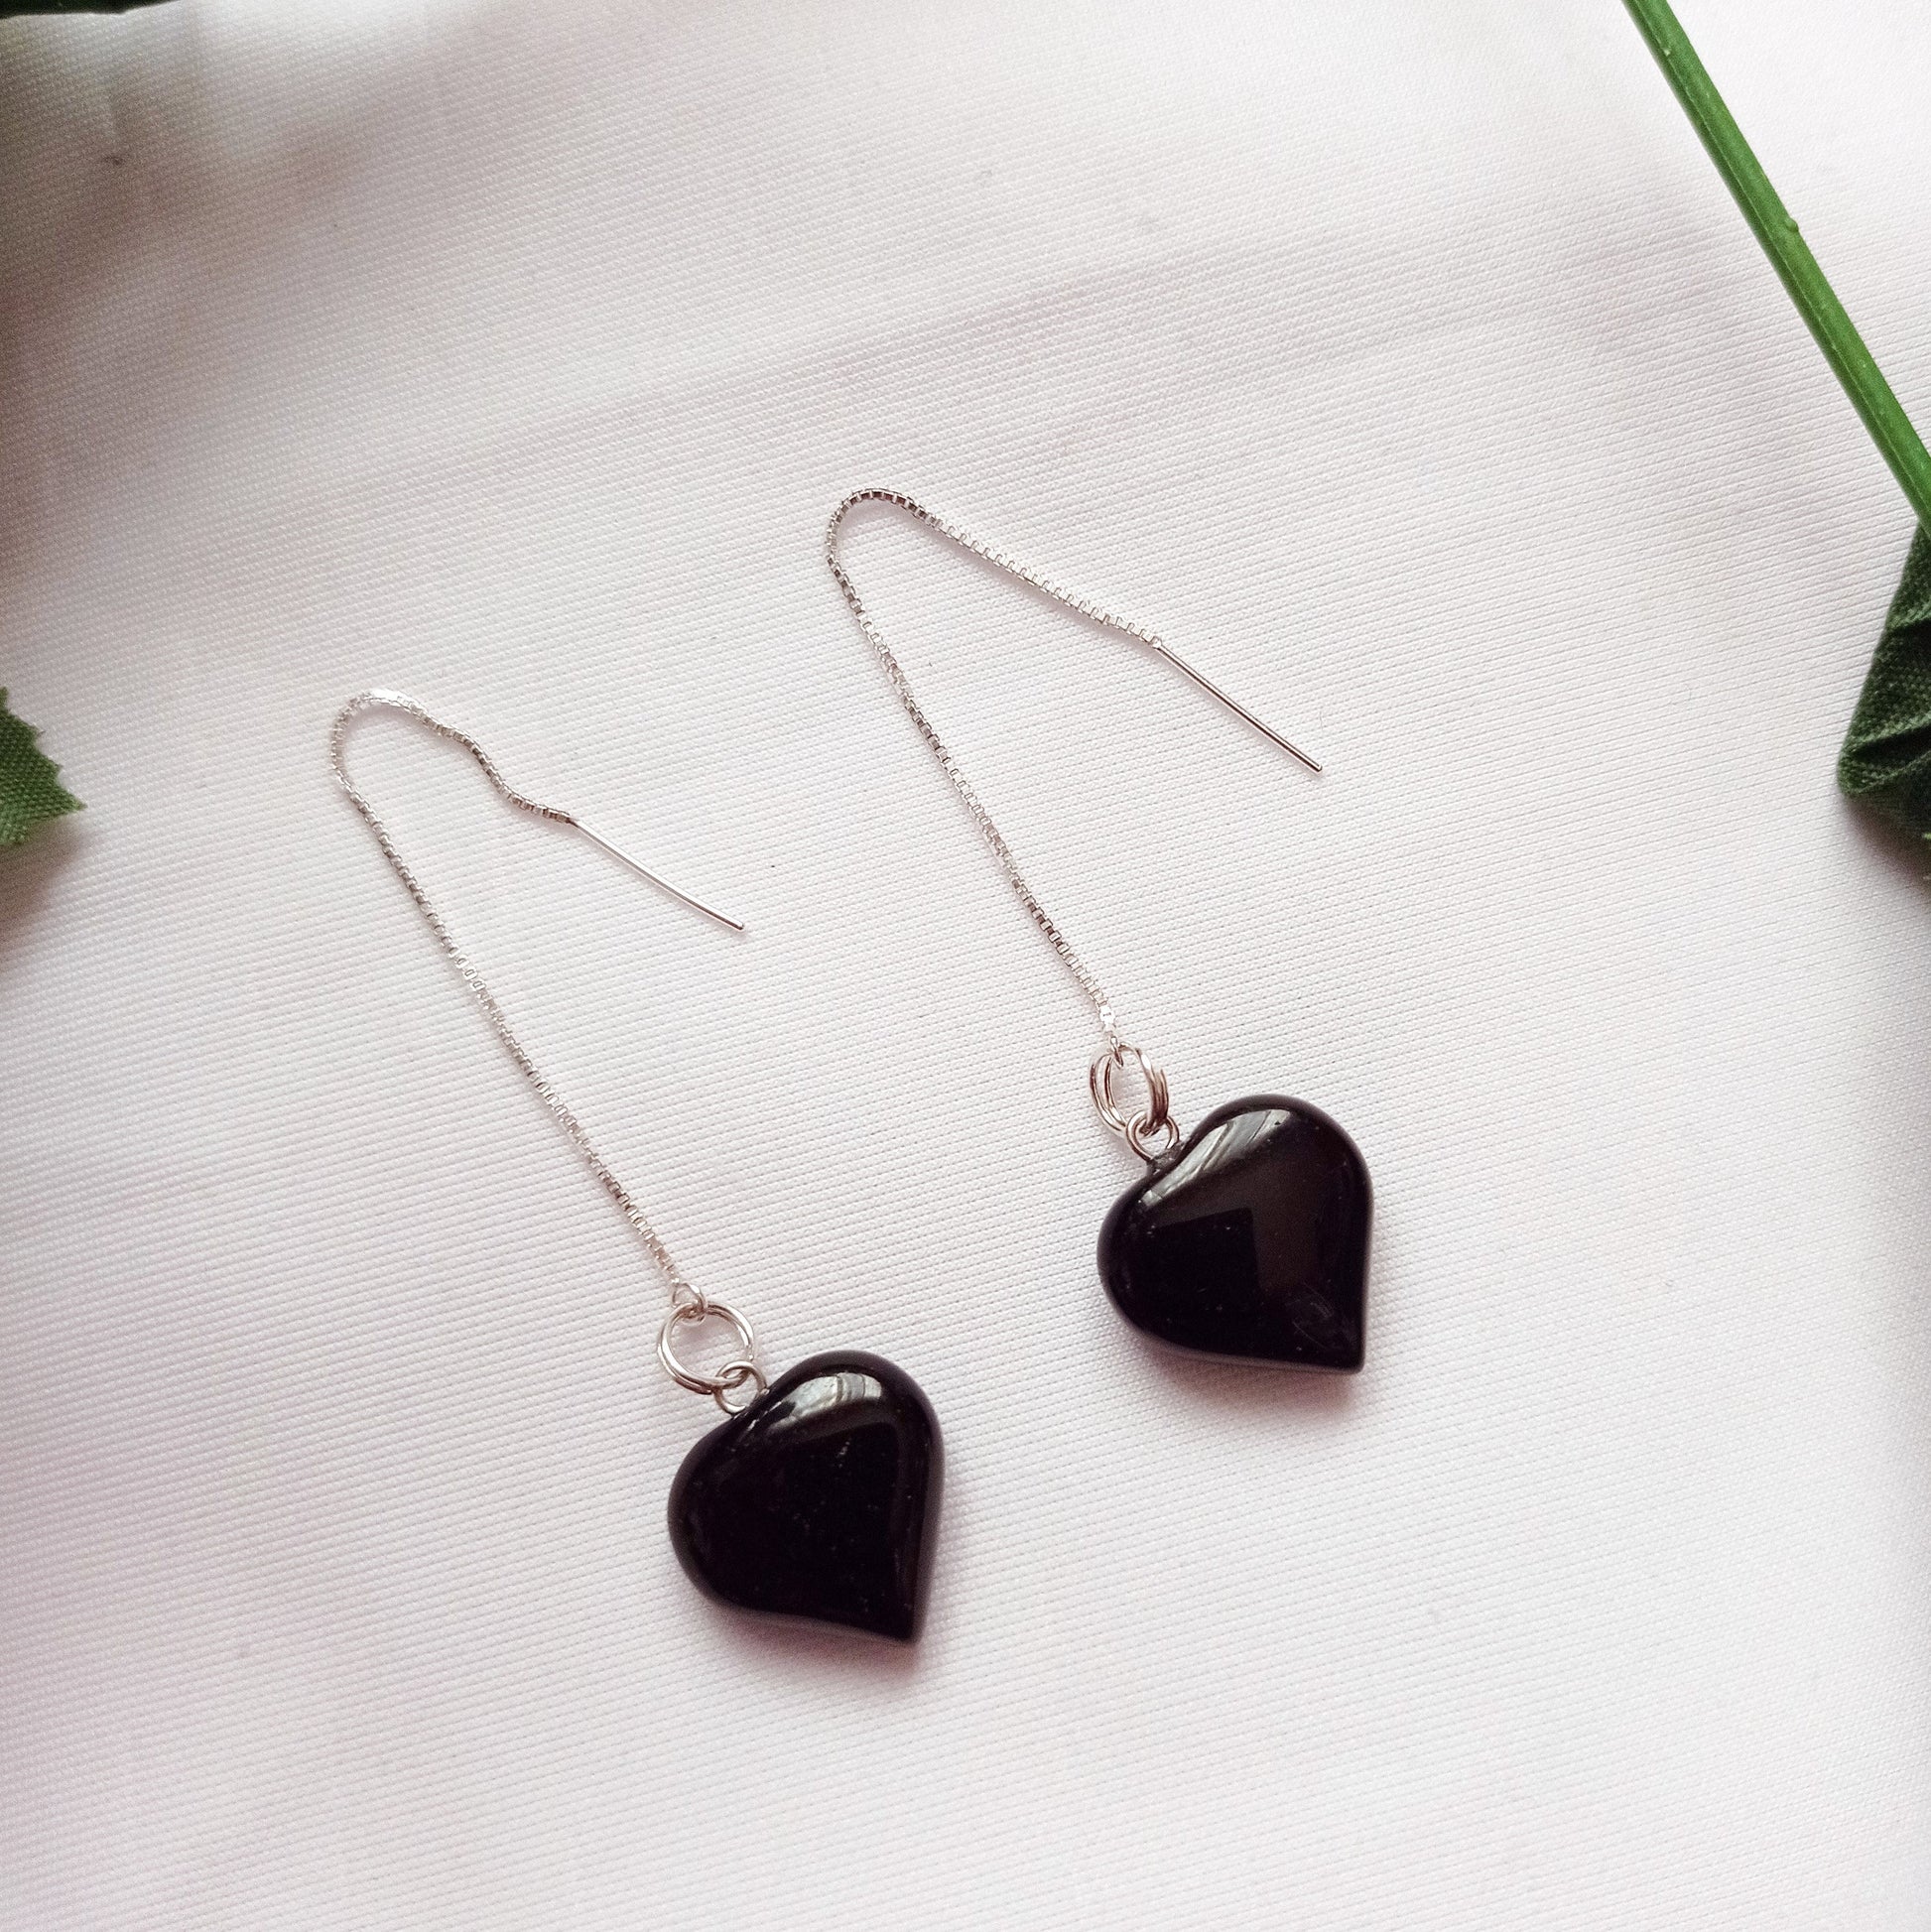 Onyx Heart Threader Earrings, Sterling Silver Earrings | by nlanlaVictory-1